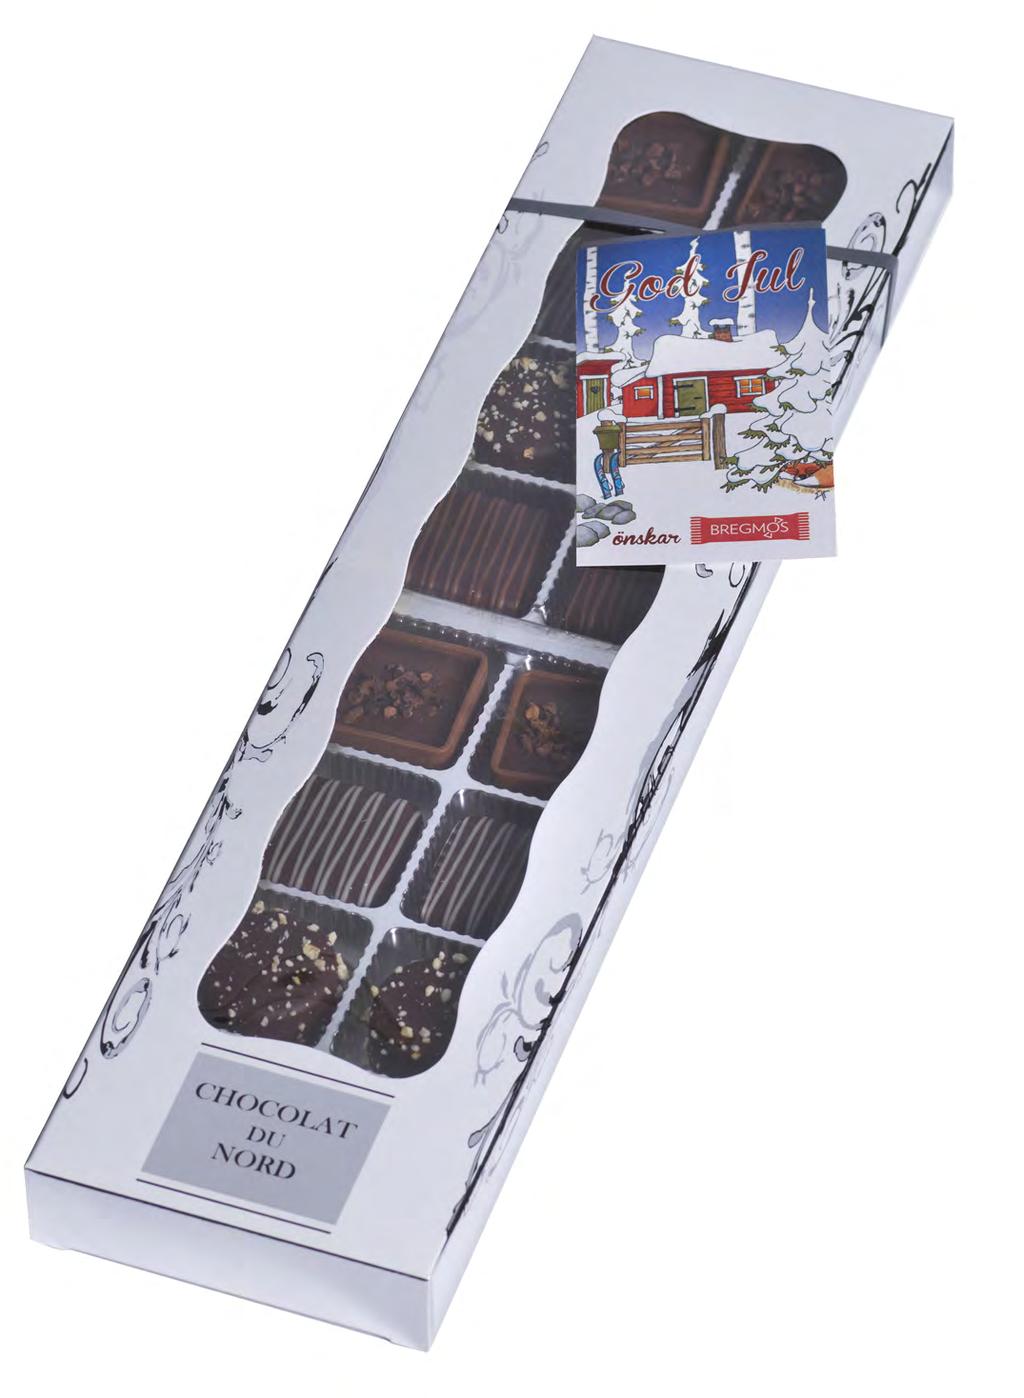 joka sisältää suklaatoimittajamme taitavasti valmistettuja korkealaatuisia ja herkullisia suklaakonvehteja.